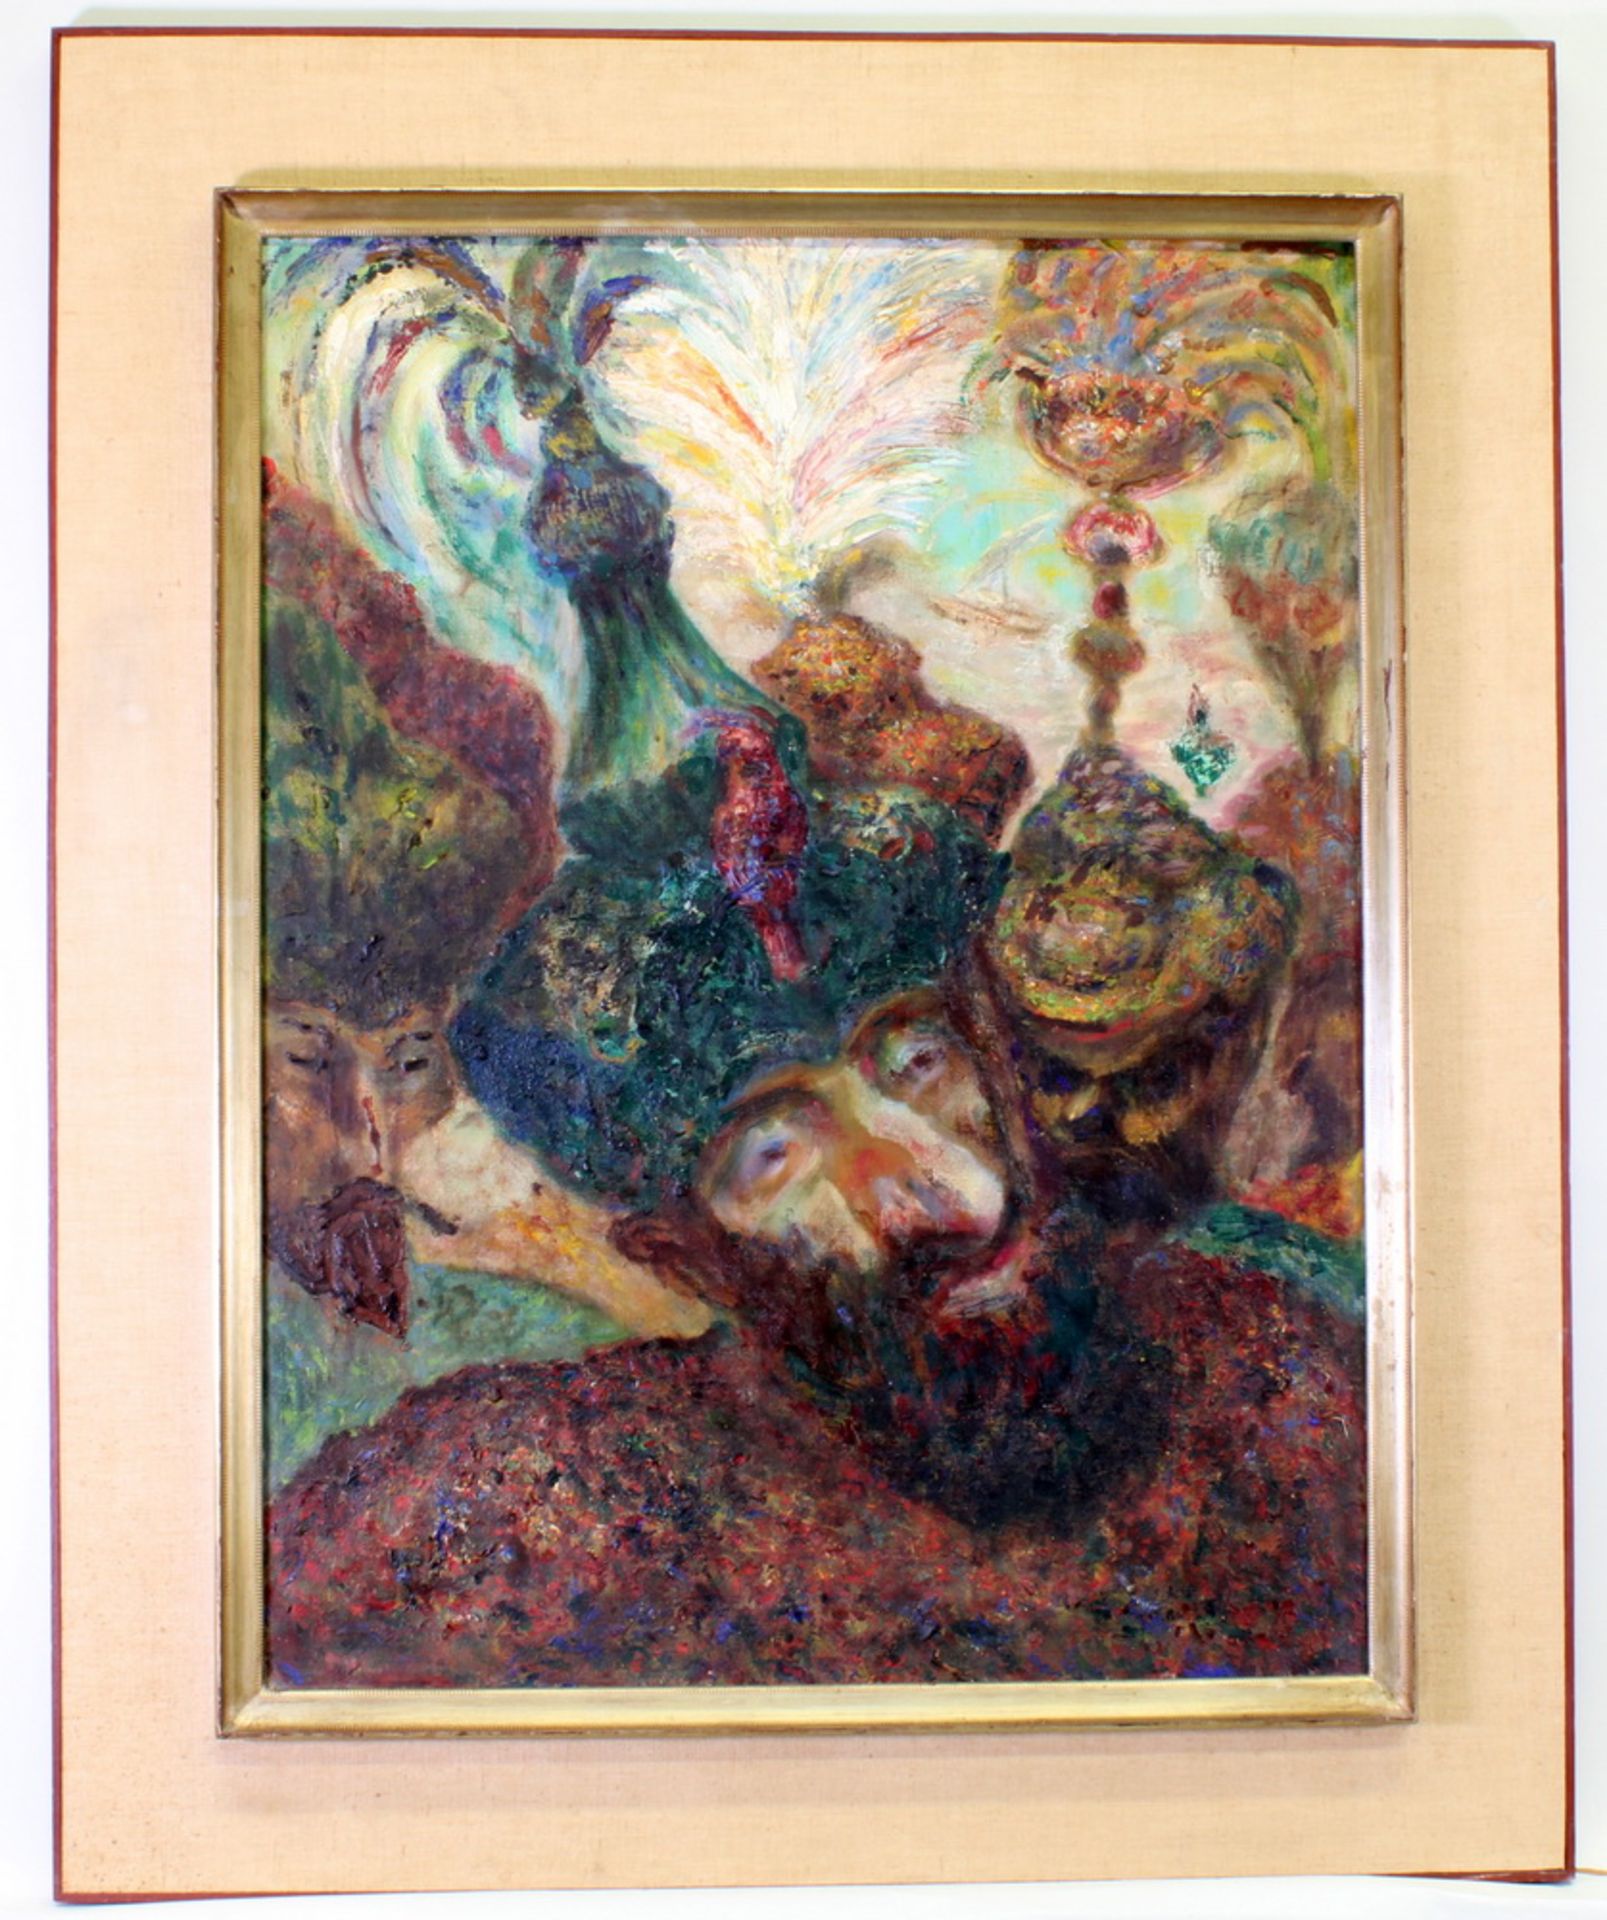 Cantens, Maurice (1891 - 1965), "Tausend und eine Nacht", Öl auf Leinwand, verso Atelieretikett, K - Image 2 of 4